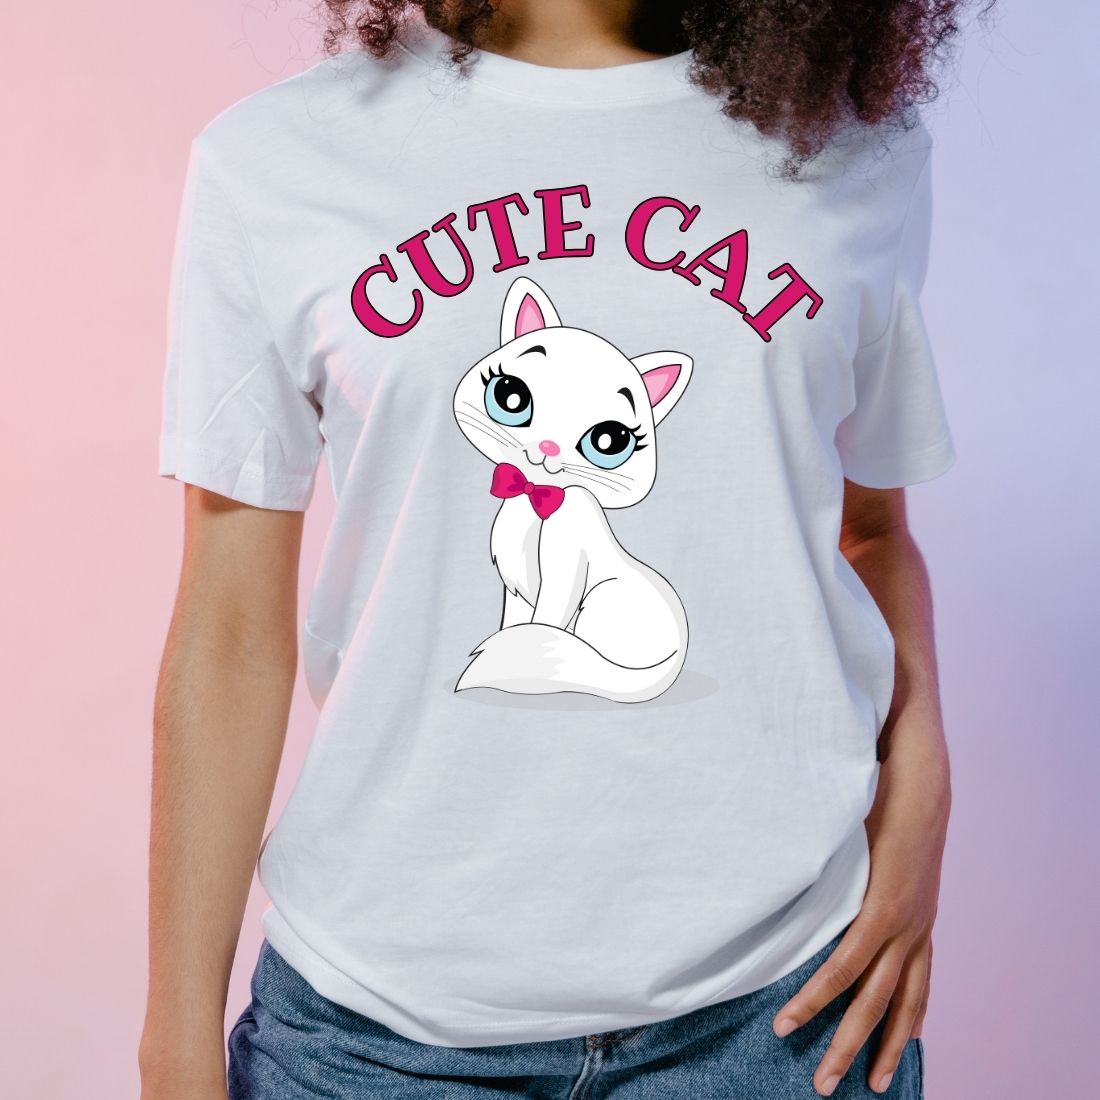 Cute cat design cover image.